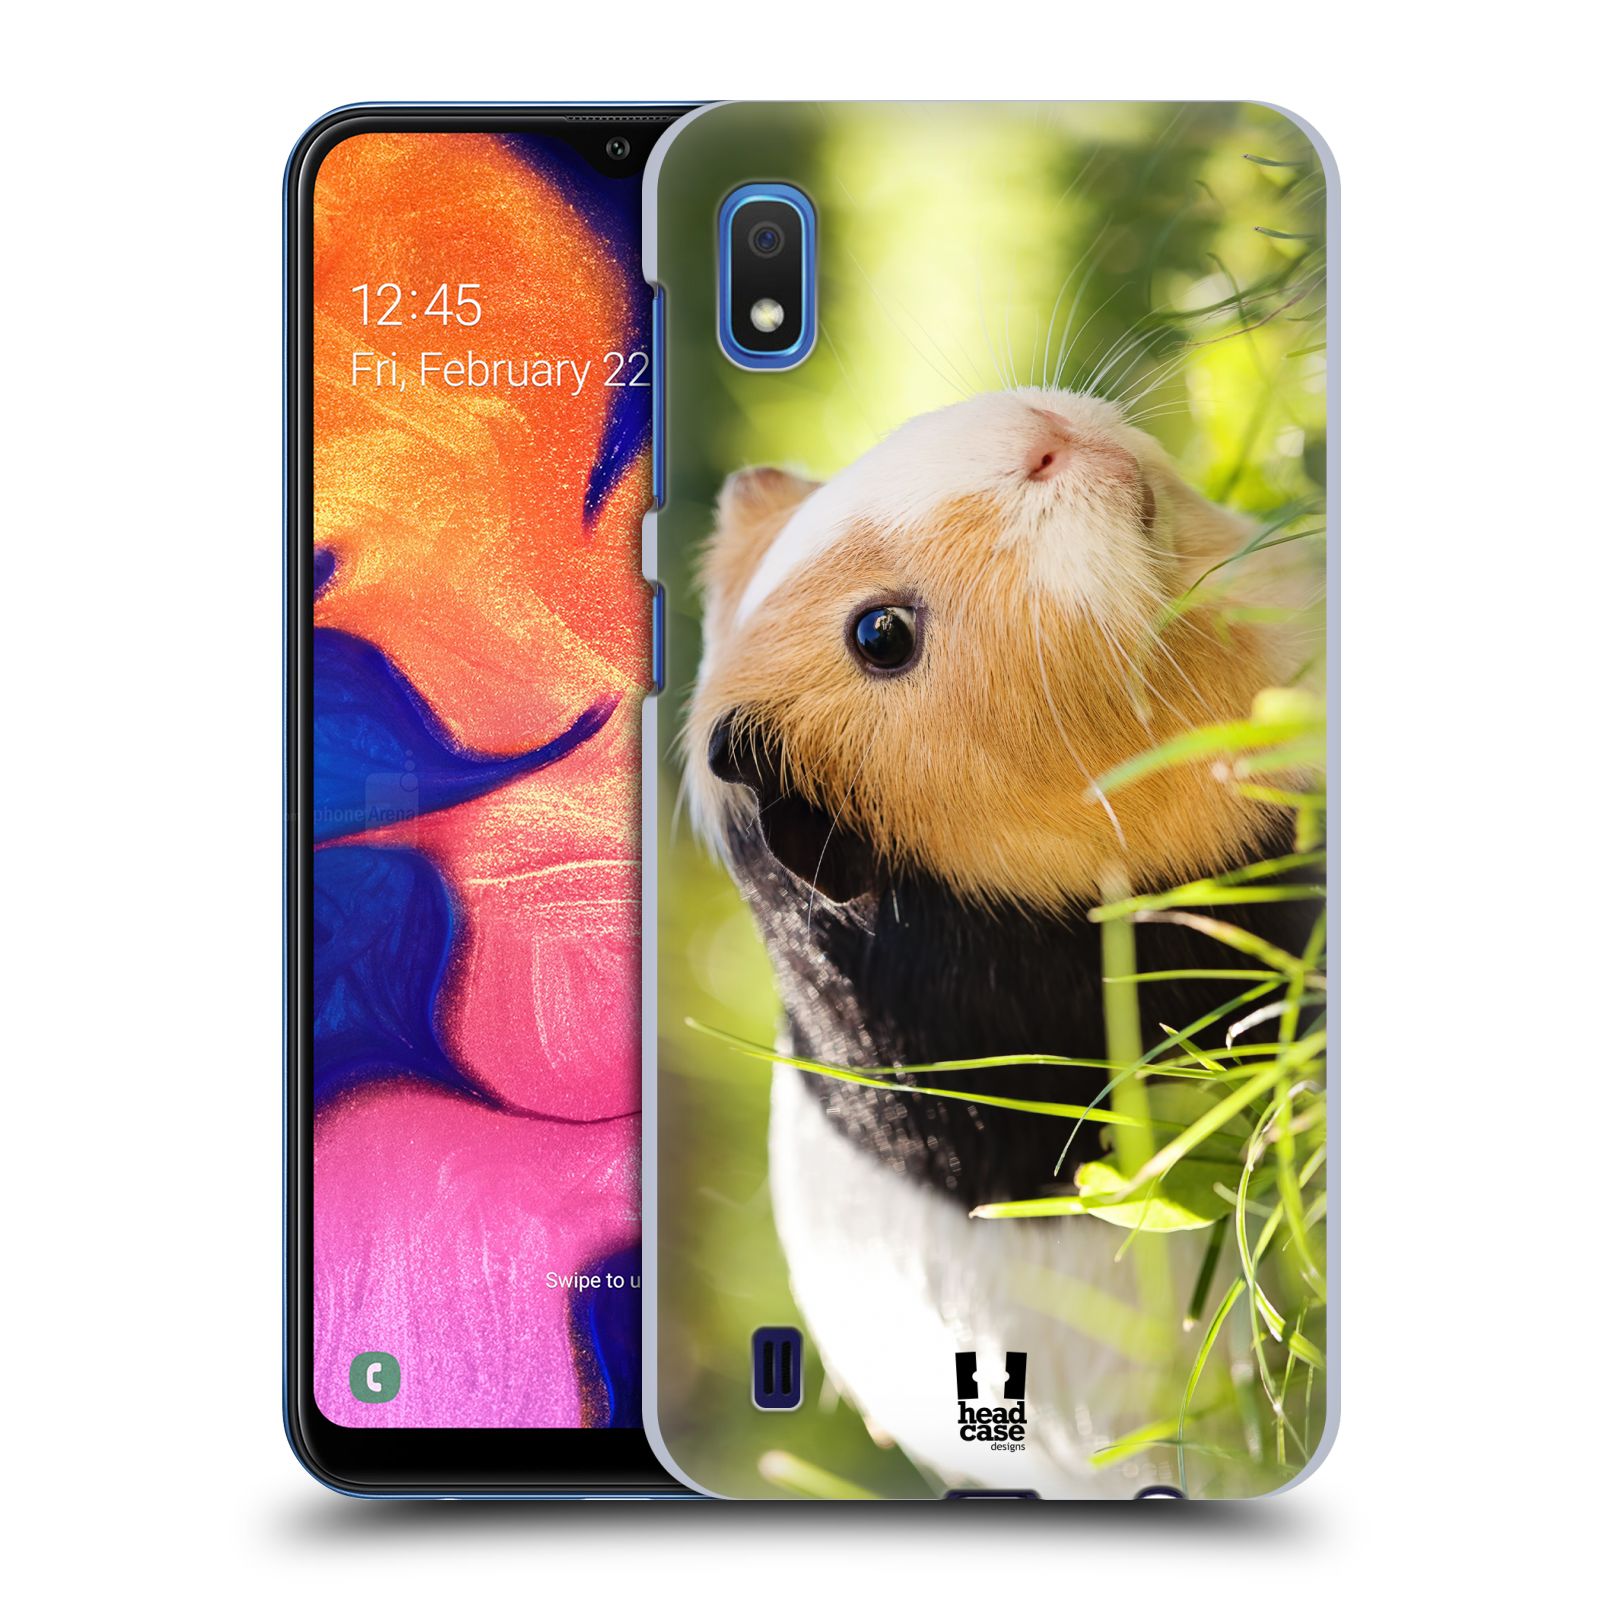 Pouzdro na mobil Samsung Galaxy A10 - HEAD CASE - vzor slavná zvířata foto morče